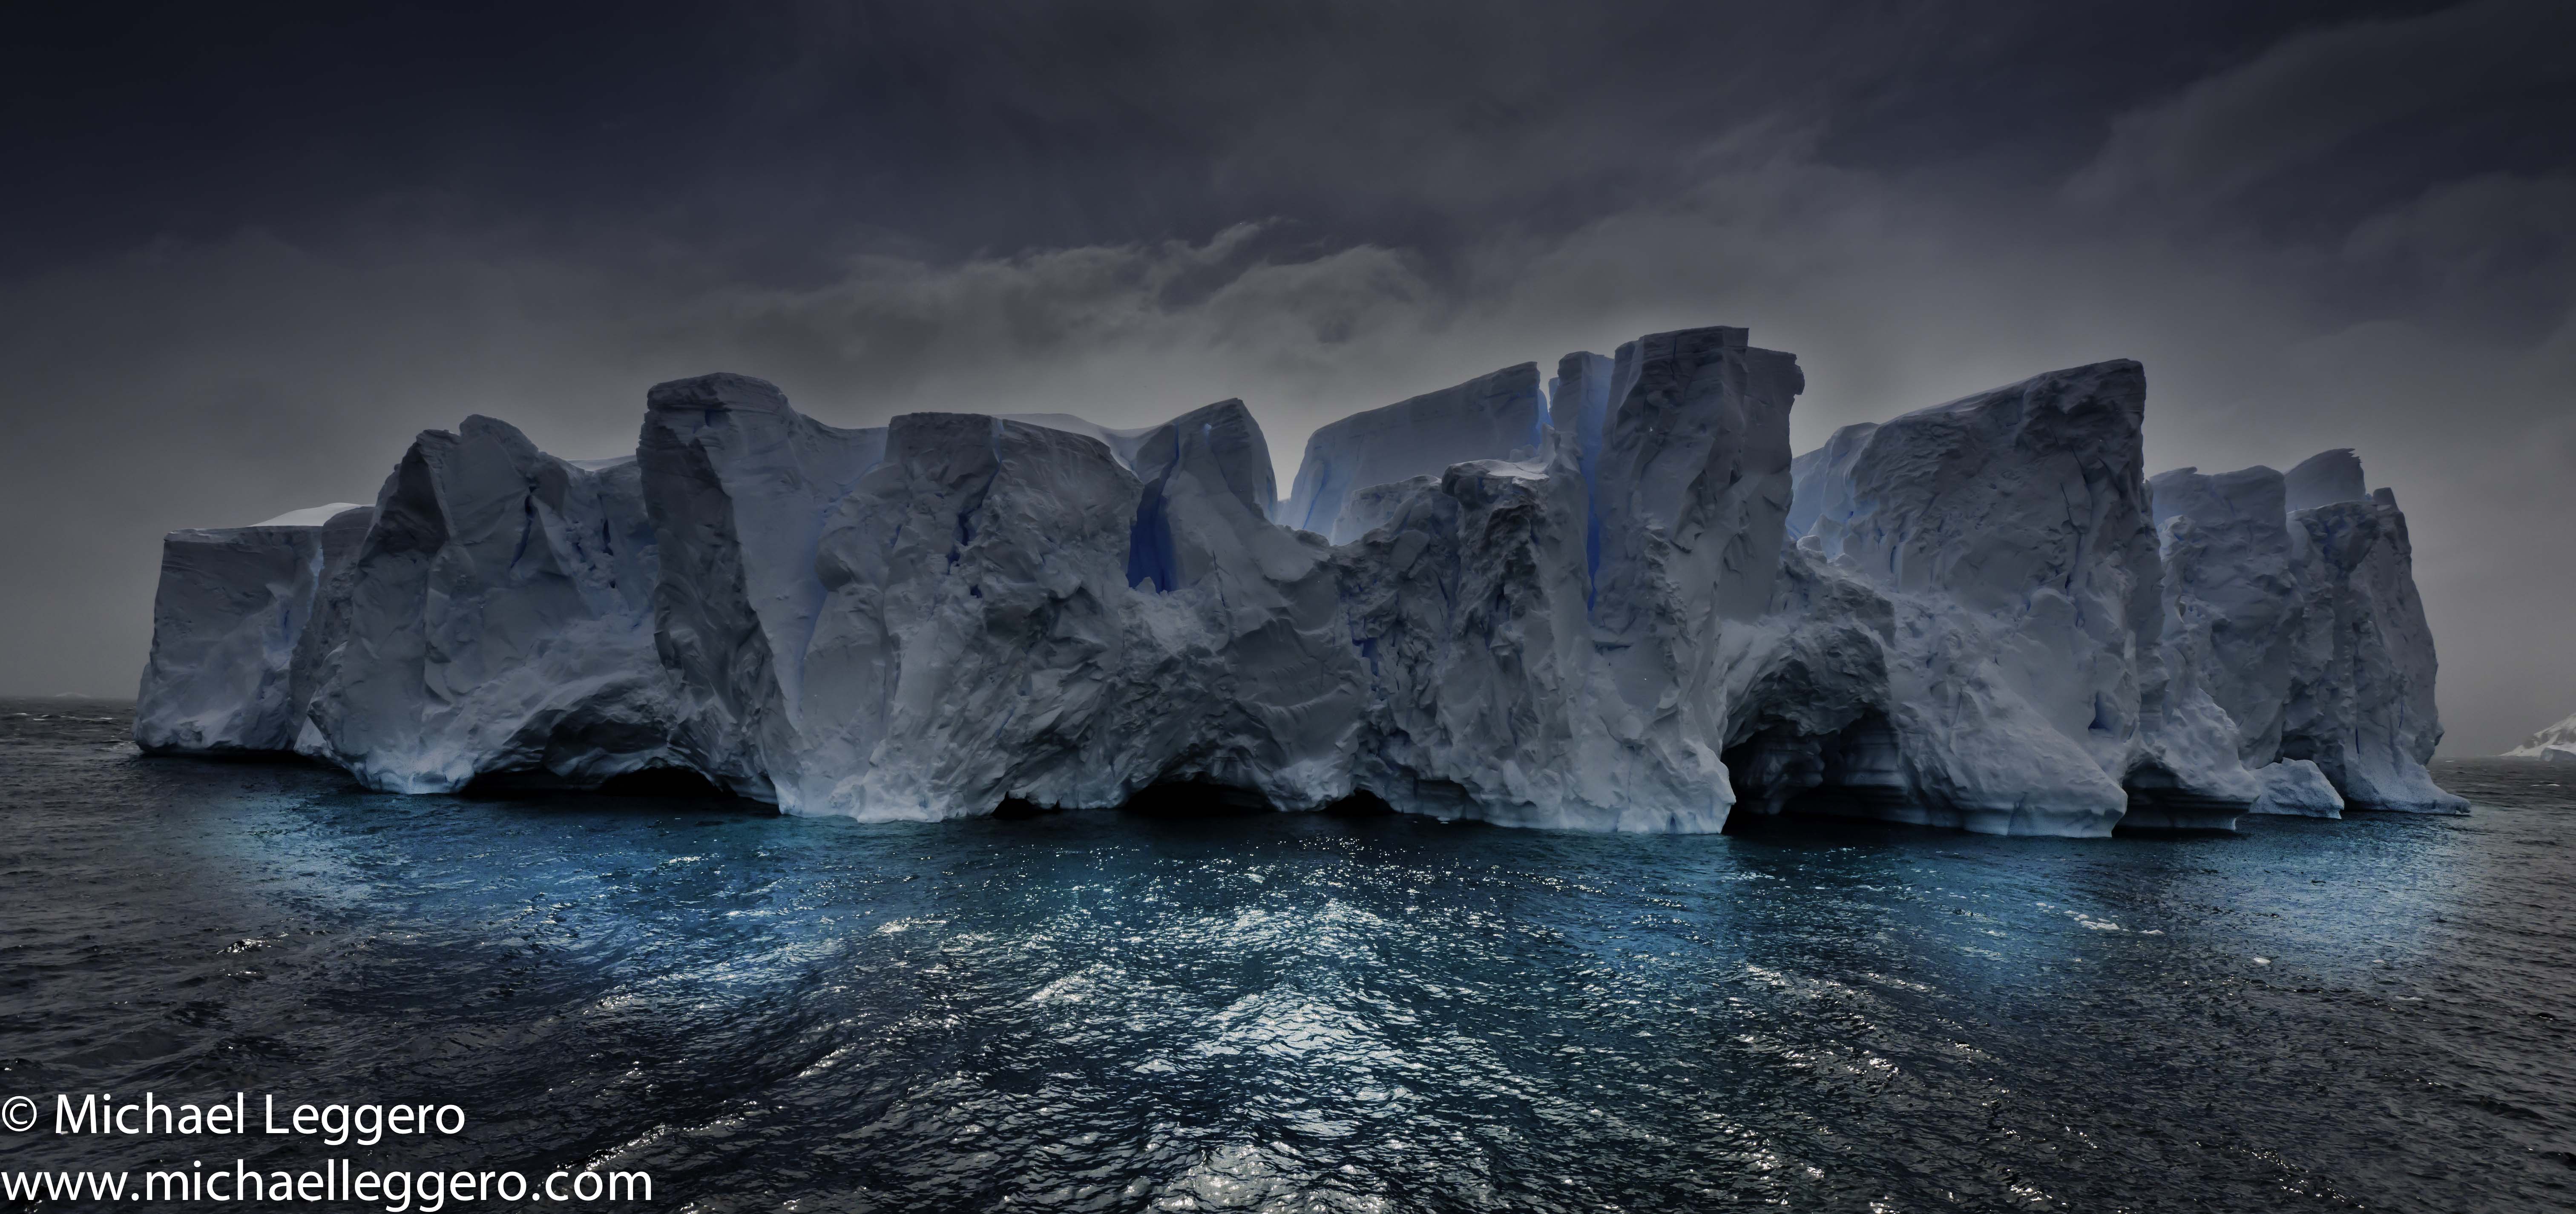 Antarctica desktop picture, Antarctica desktop photo, Antarctica